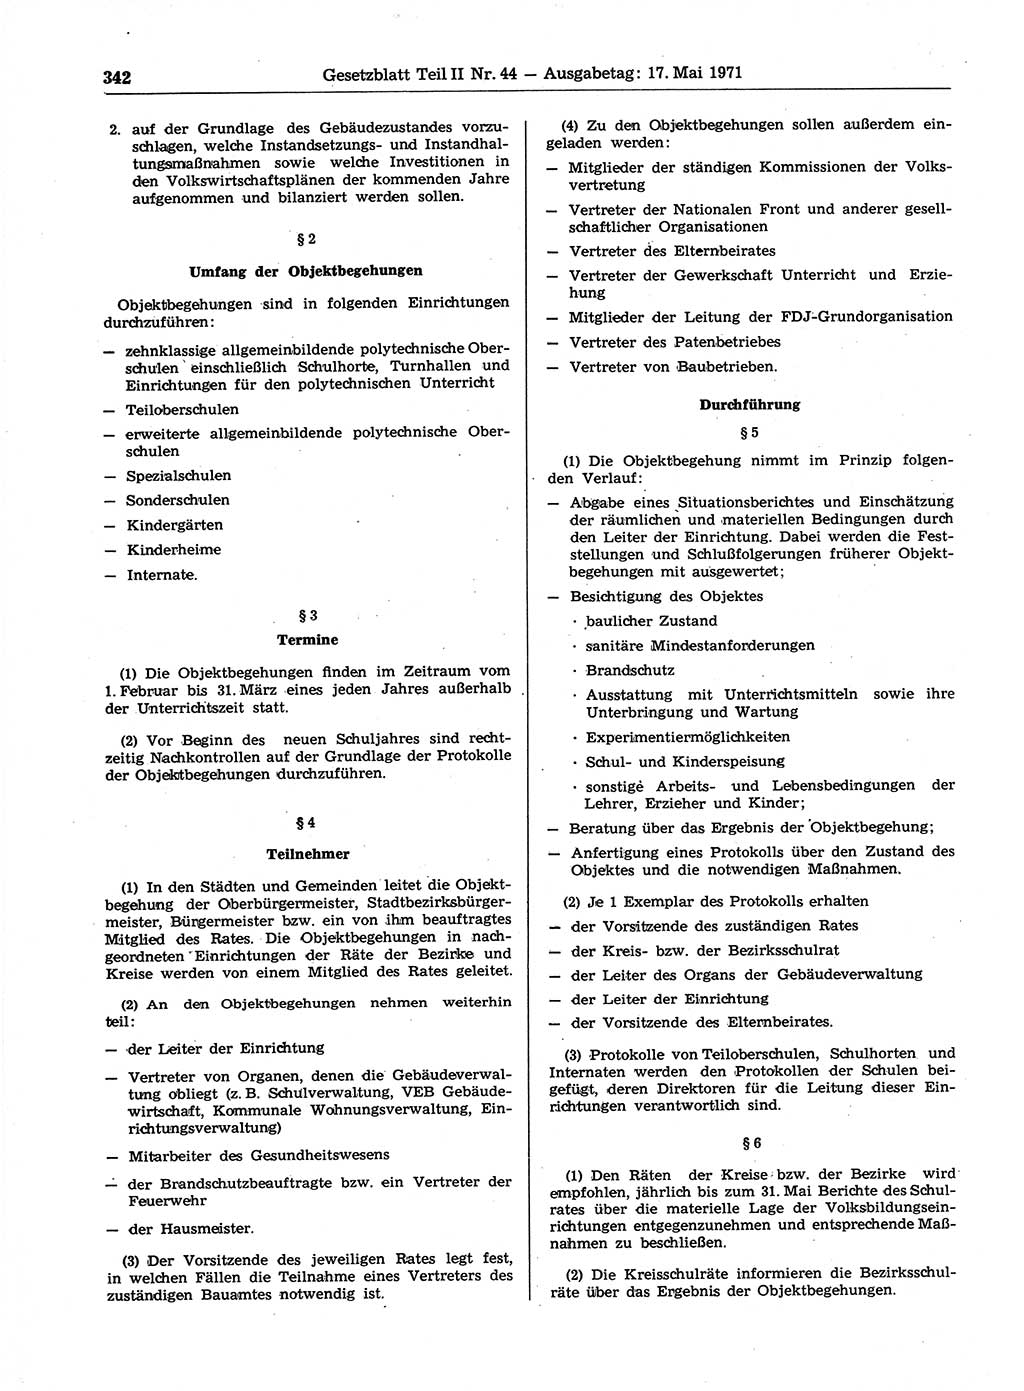 Gesetzblatt (GBl.) der Deutschen Demokratischen Republik (DDR) Teil ⅠⅠ 1971, Seite 342 (GBl. DDR ⅠⅠ 1971, S. 342)